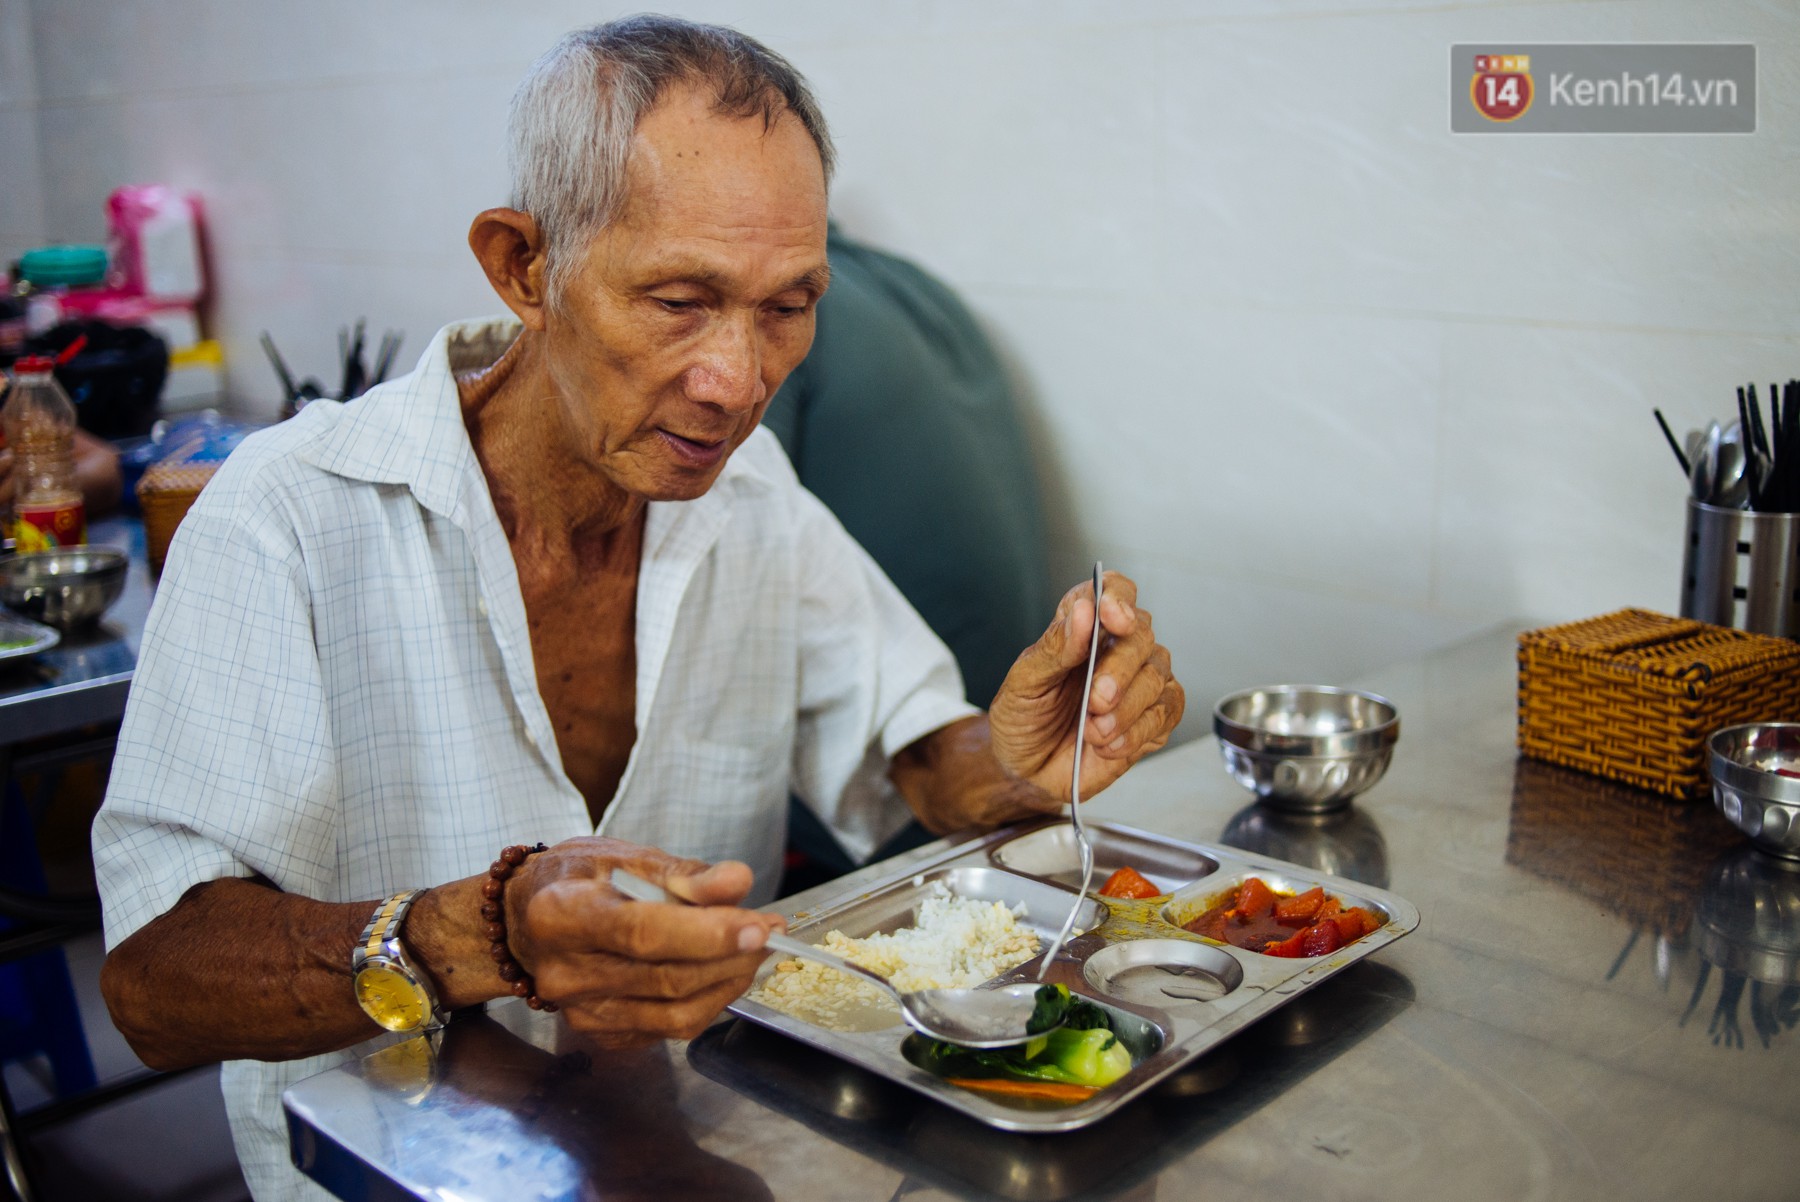 Giàu như anh bán chuối chiên Sài Gòn: Mở quán cơm 5k cho người thu nhập chưa cao, 5 năm đắt hàng - Ảnh 8.